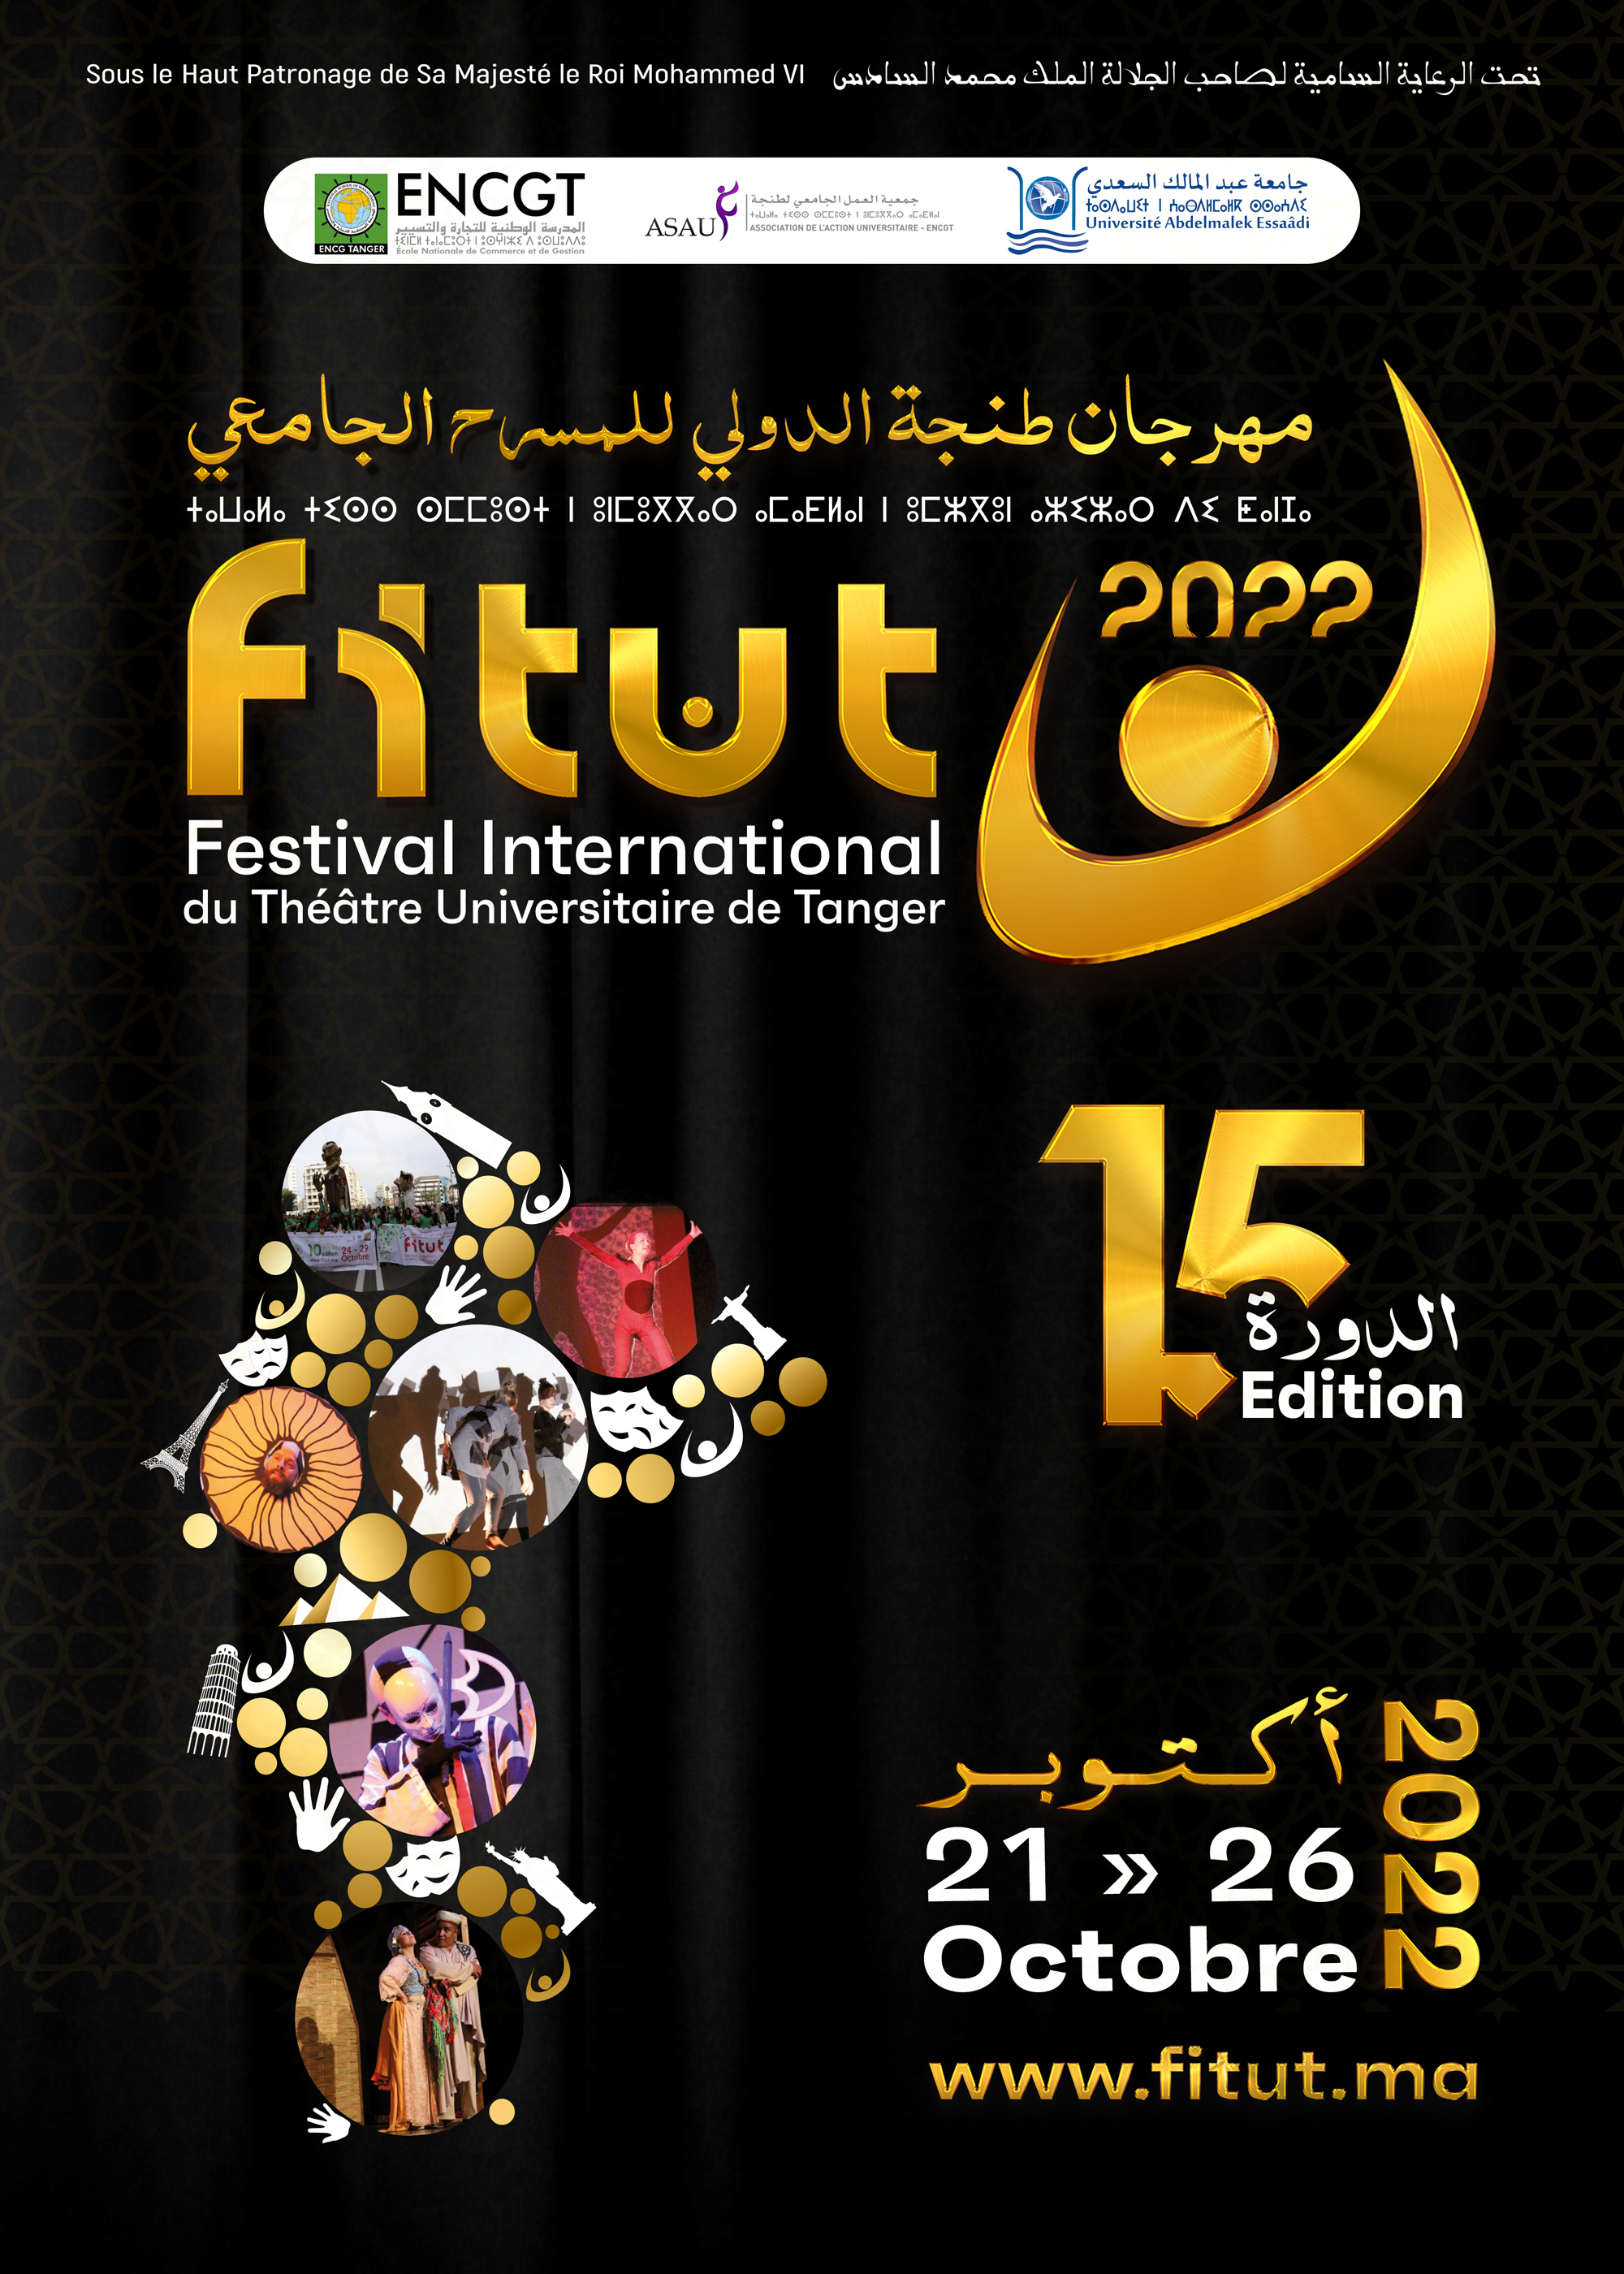 FITUT : On connaît les 7 pays participants au Festival international du théâtre universitaire de Tanger